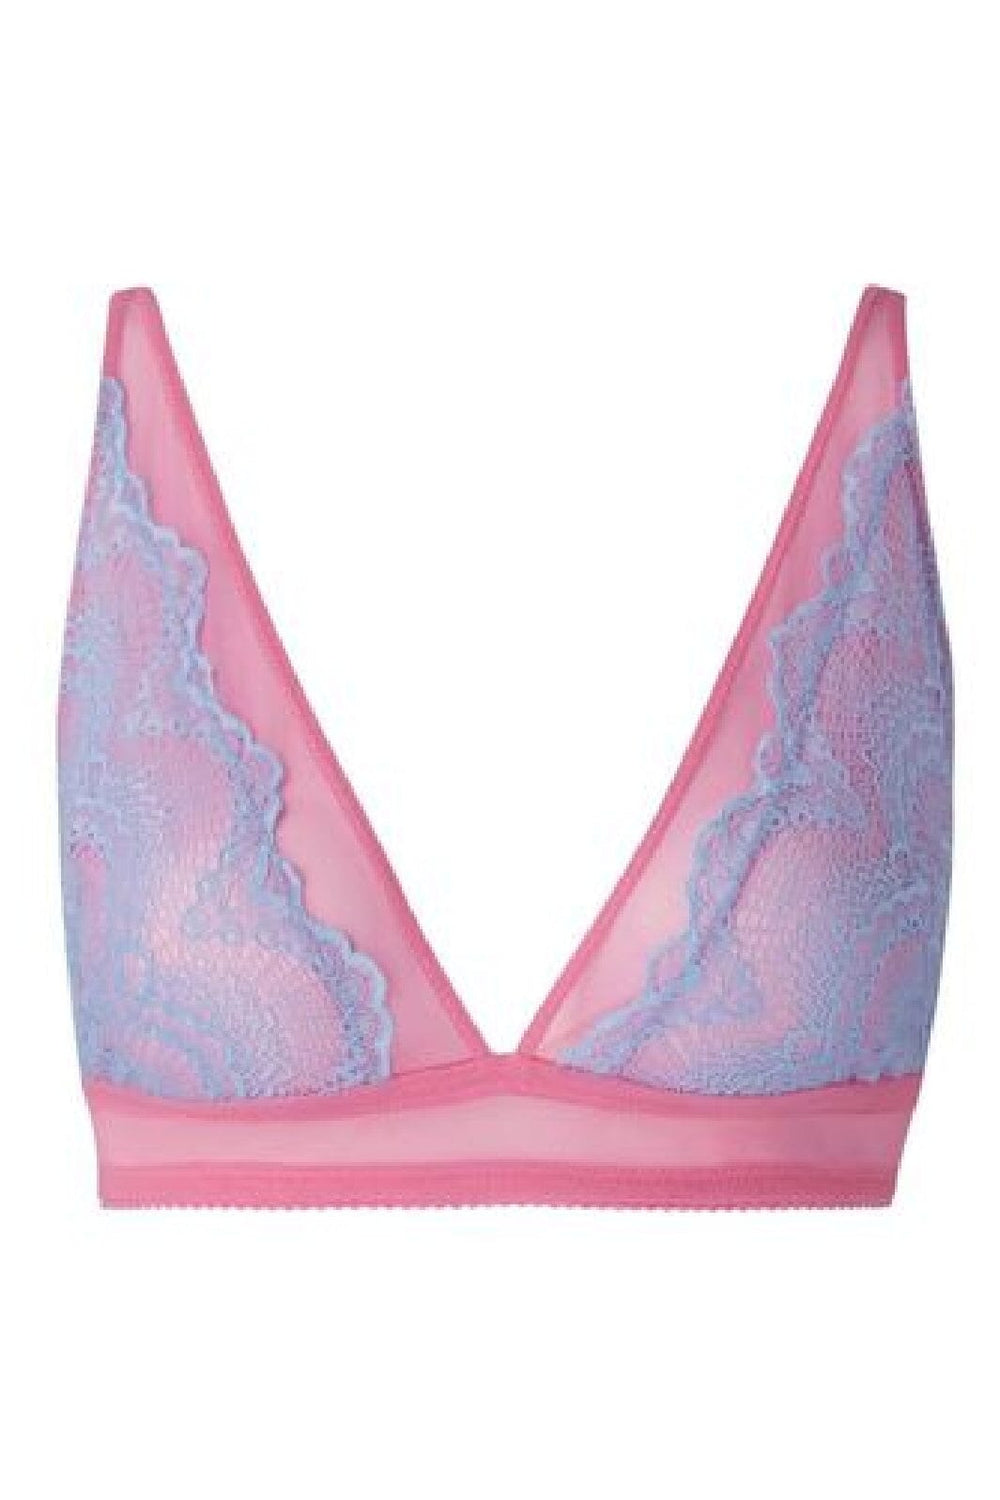 Understatement Underwear - Lace Mesh Plunge Bralette - Light Blue / Candy Pink BH 